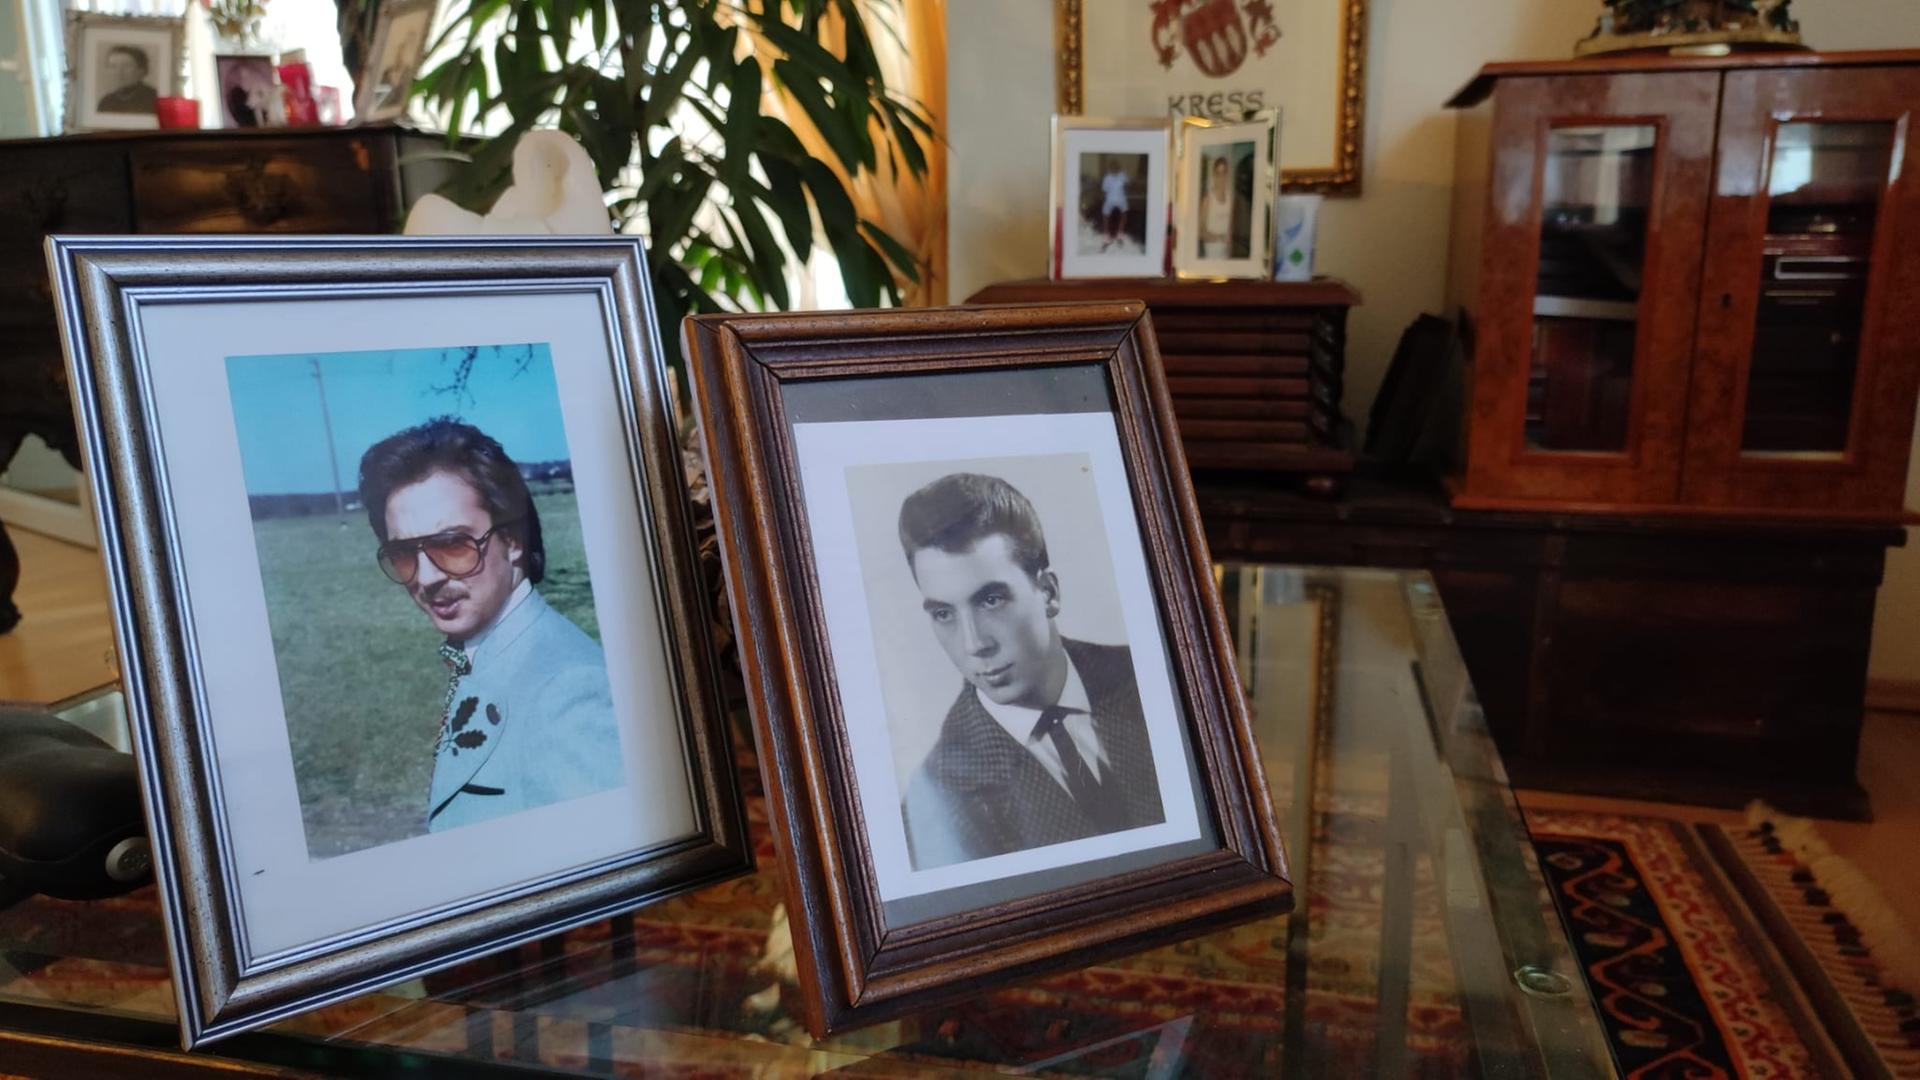 In einem Wohnzimmer stehen zwei Bilderrahmen auf einem Glastisch. Sie zeigen jeweils einen jungen Mann.